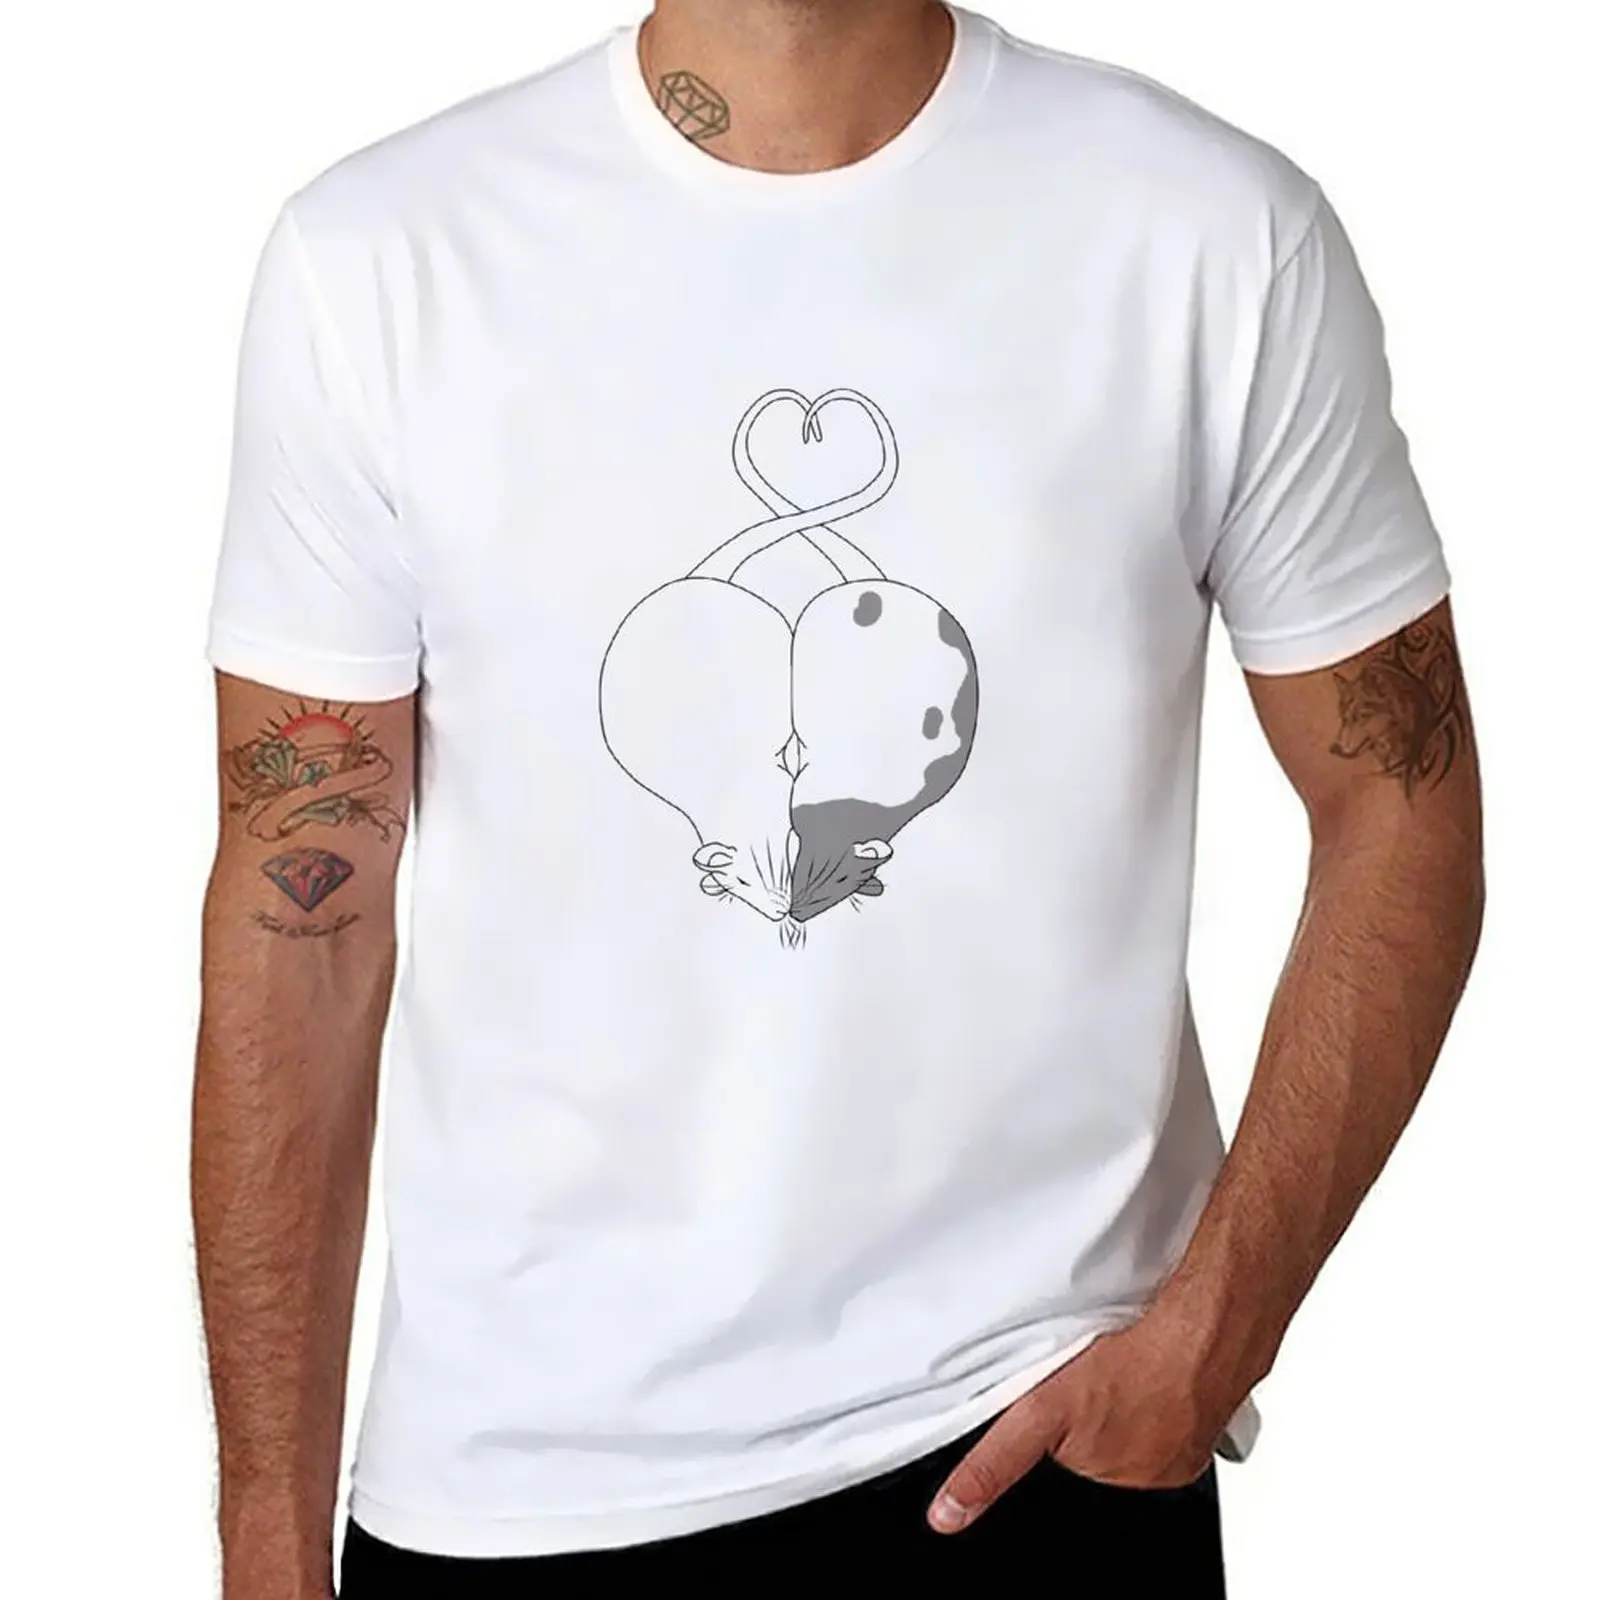 

Новинка футболка I 3 крысы Графические футболки быстросохнущая футболка Забавные футболки простая футболка тяжелые футболки для мужчин